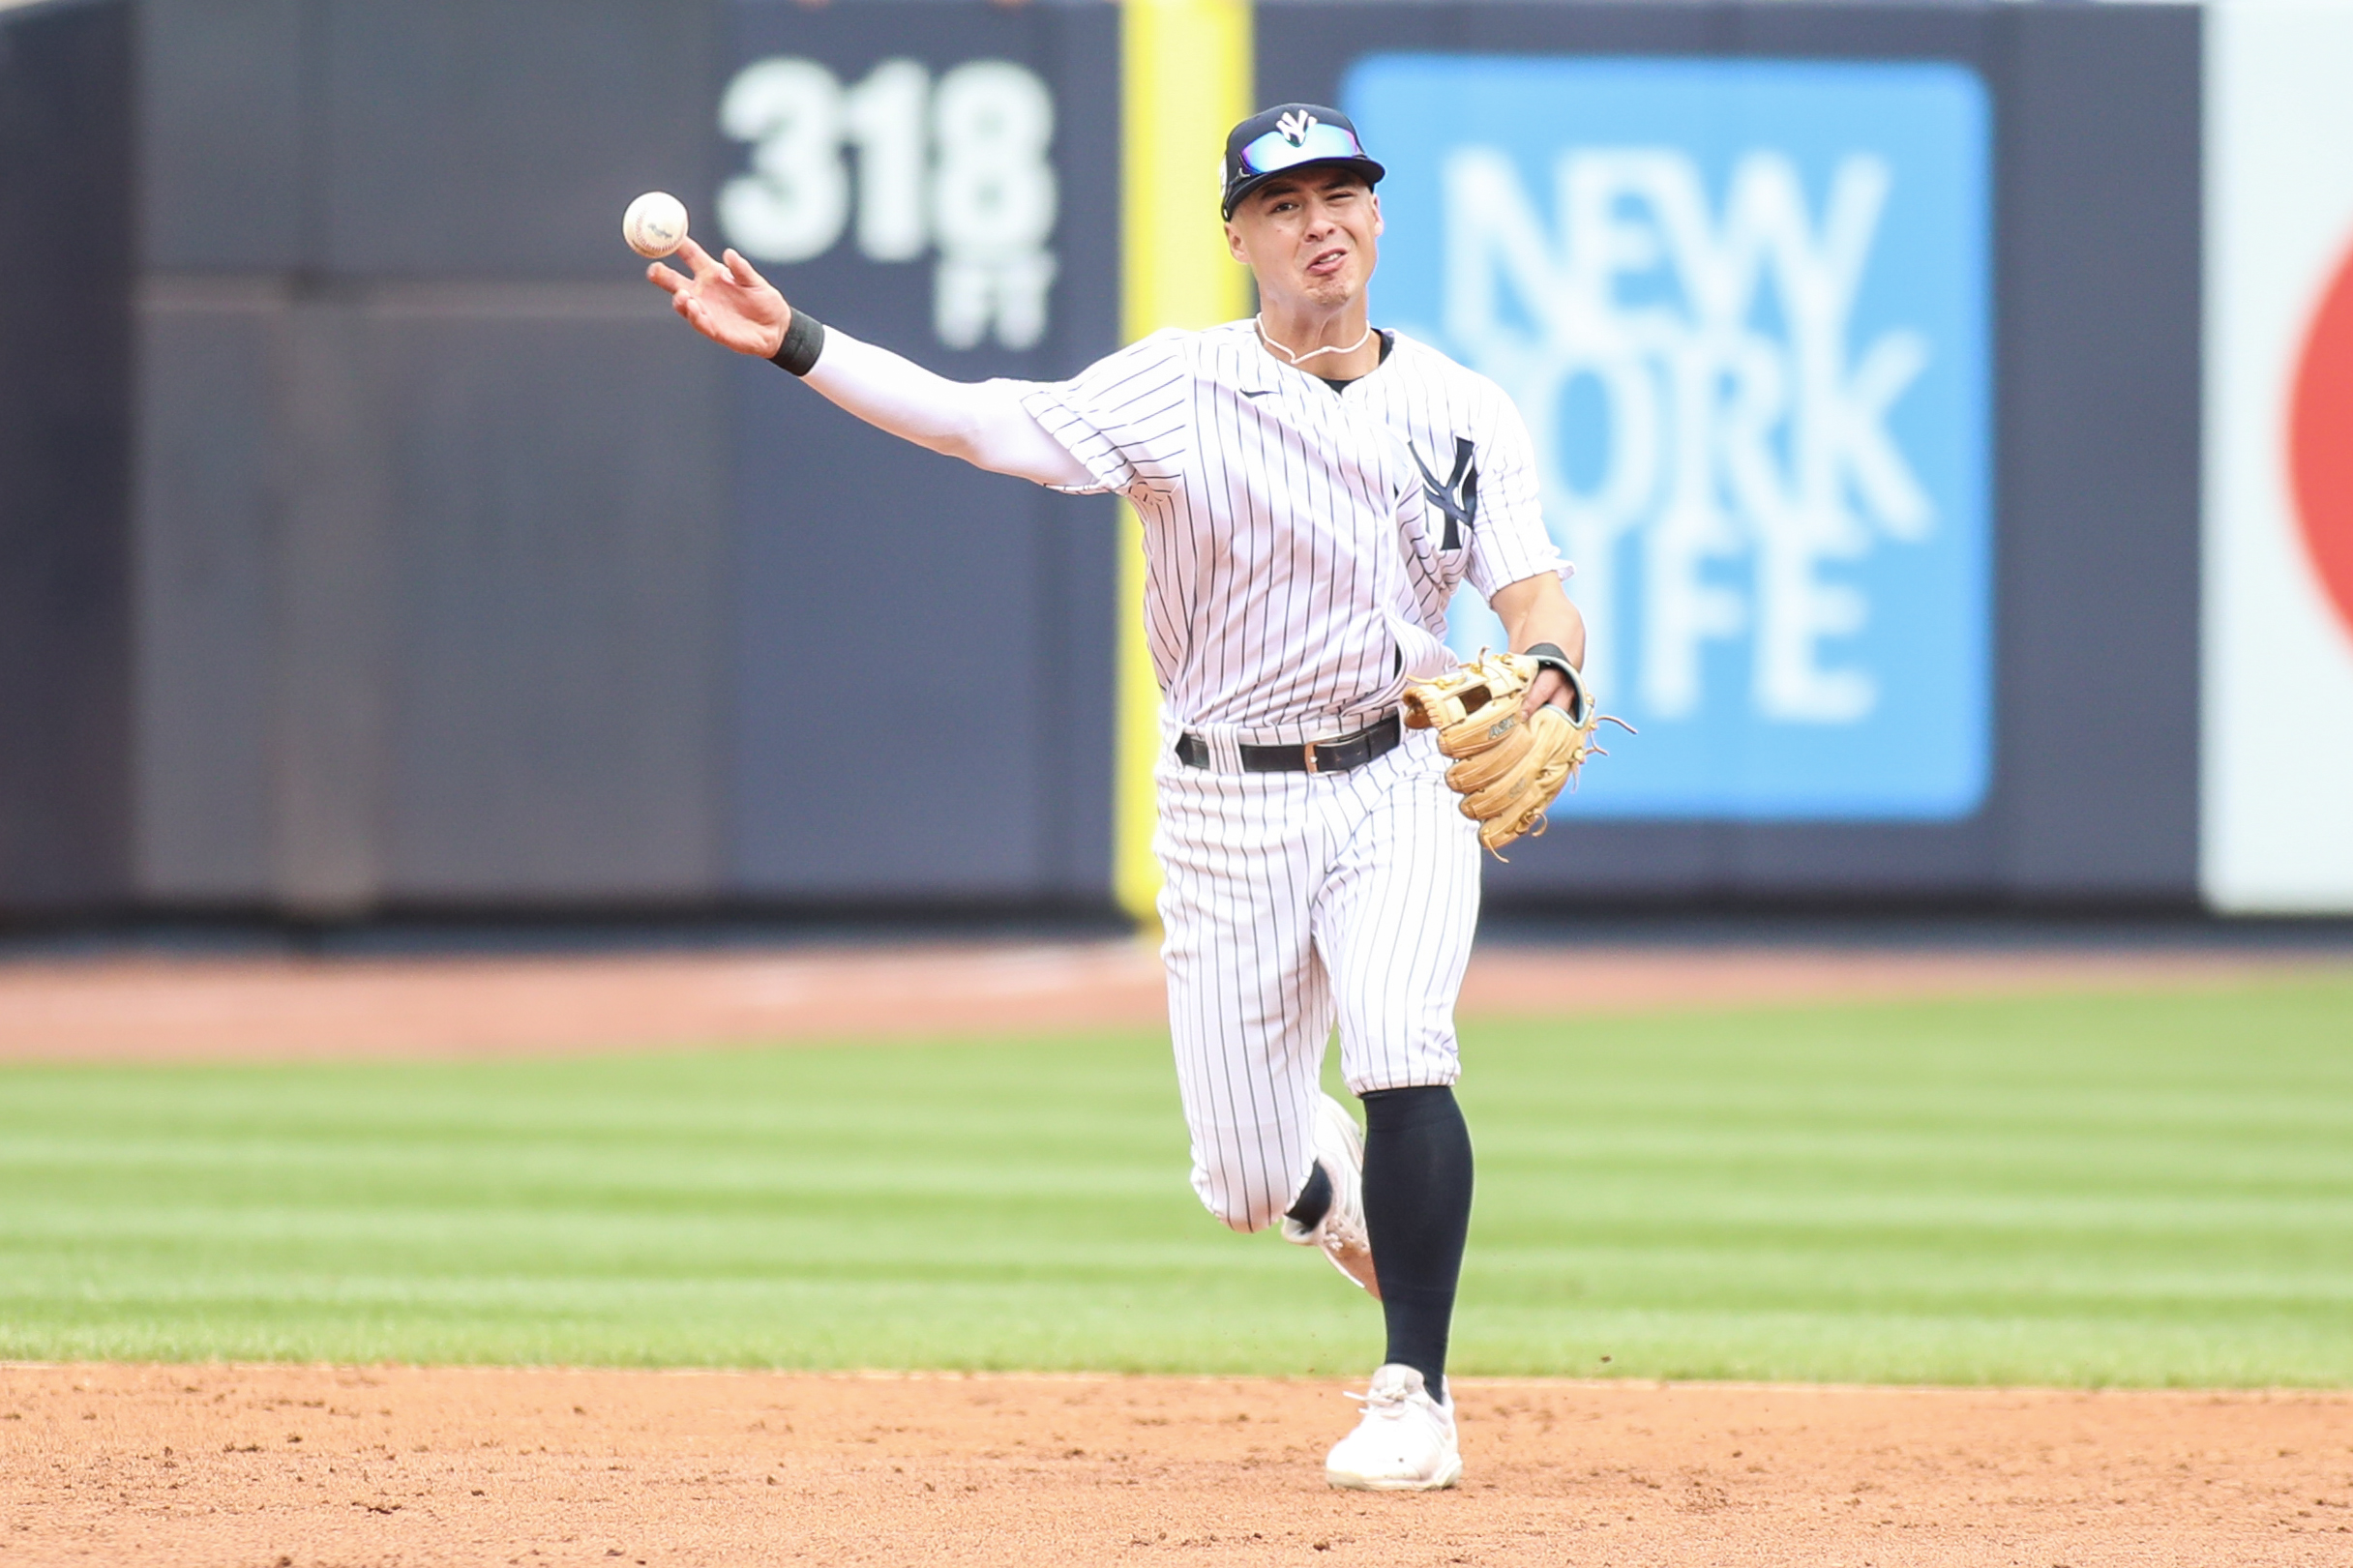 Yankees' rookie shortstop does his best Derek Jeter impression